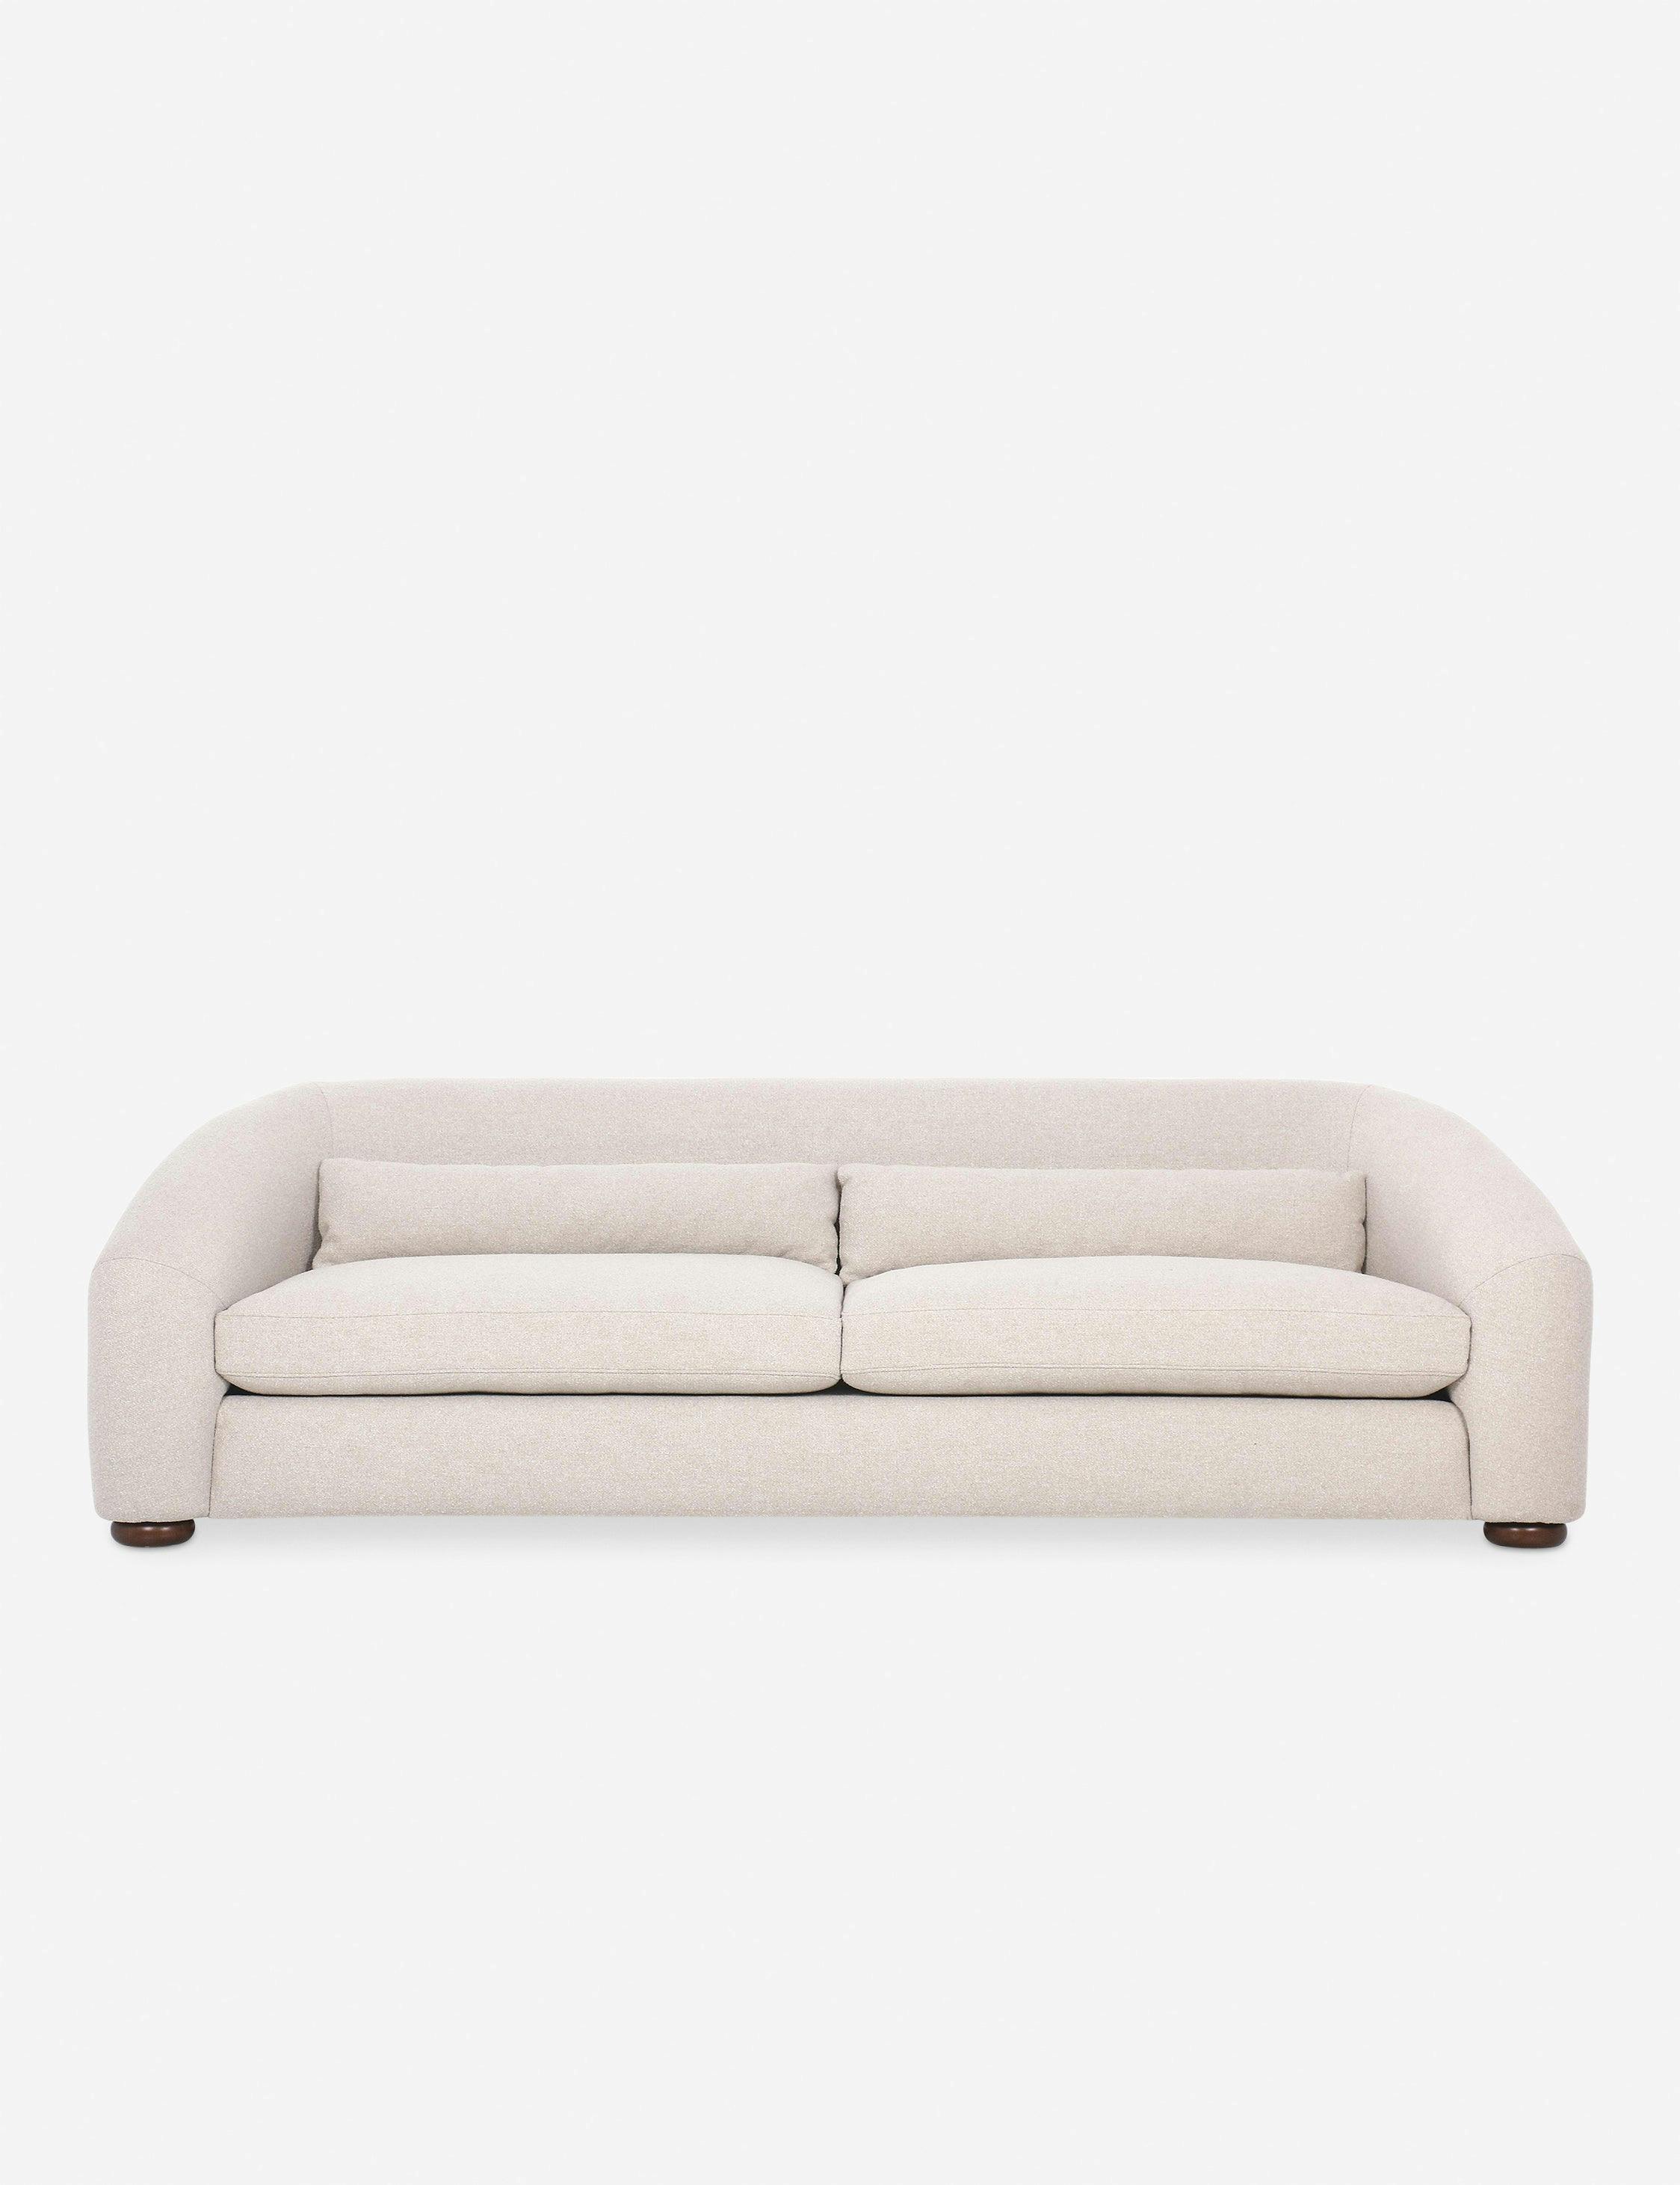 Mewis Sofa - Natural